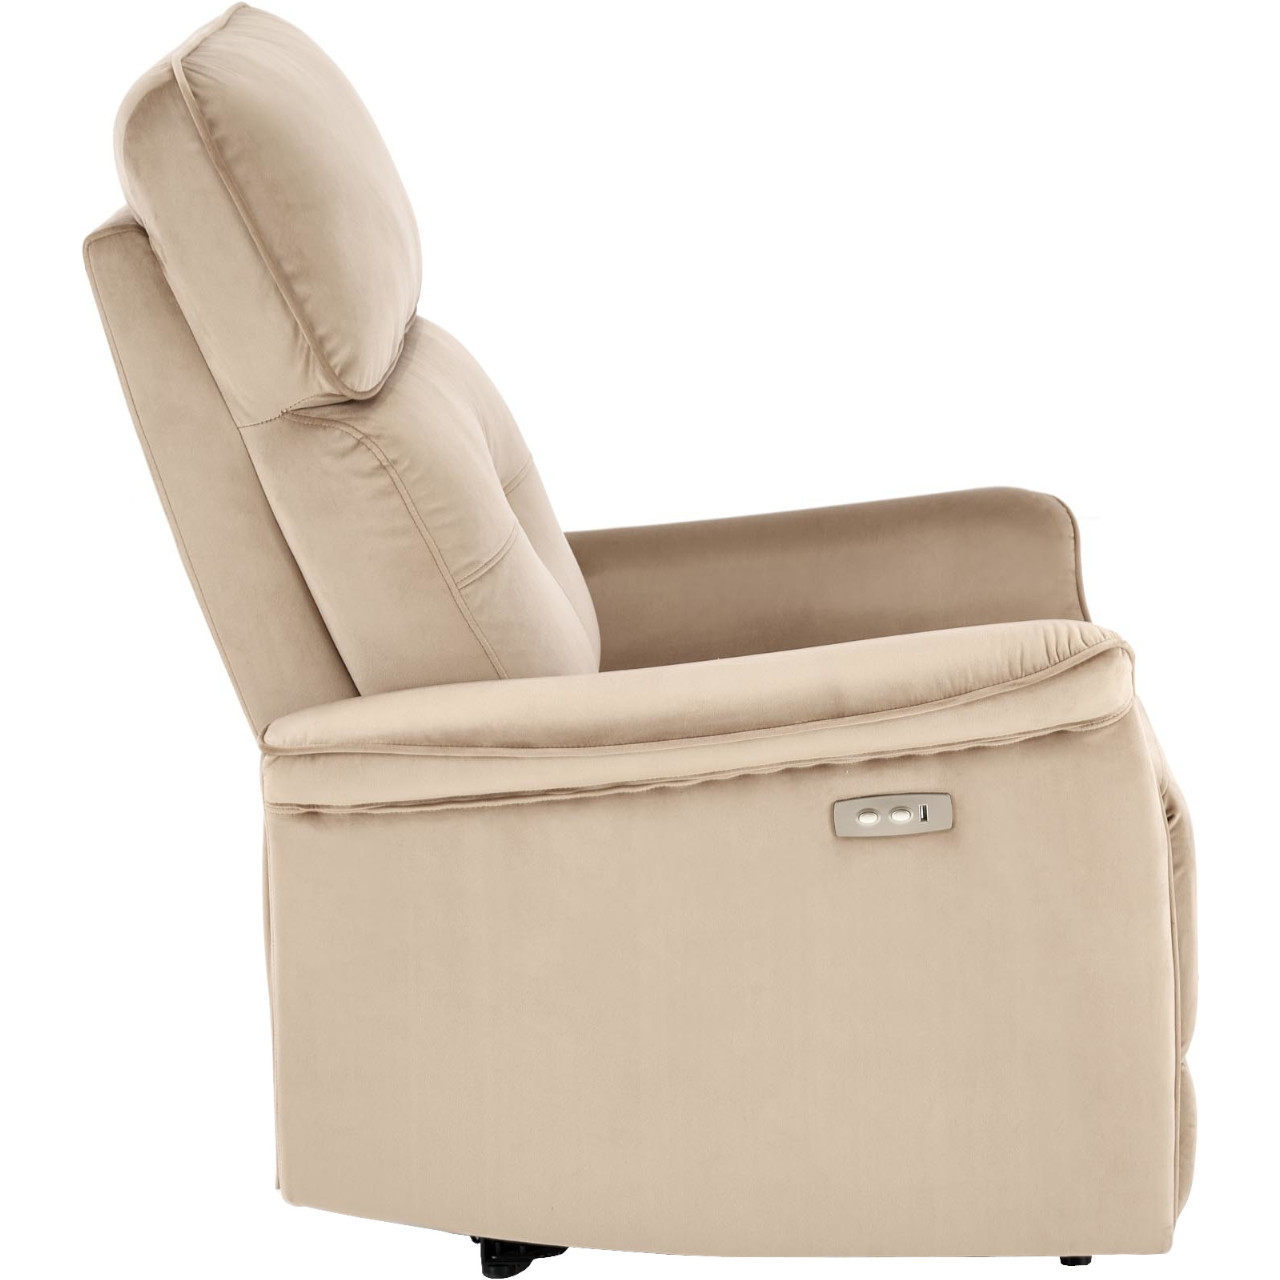 Recliner armchair SAFIR beige